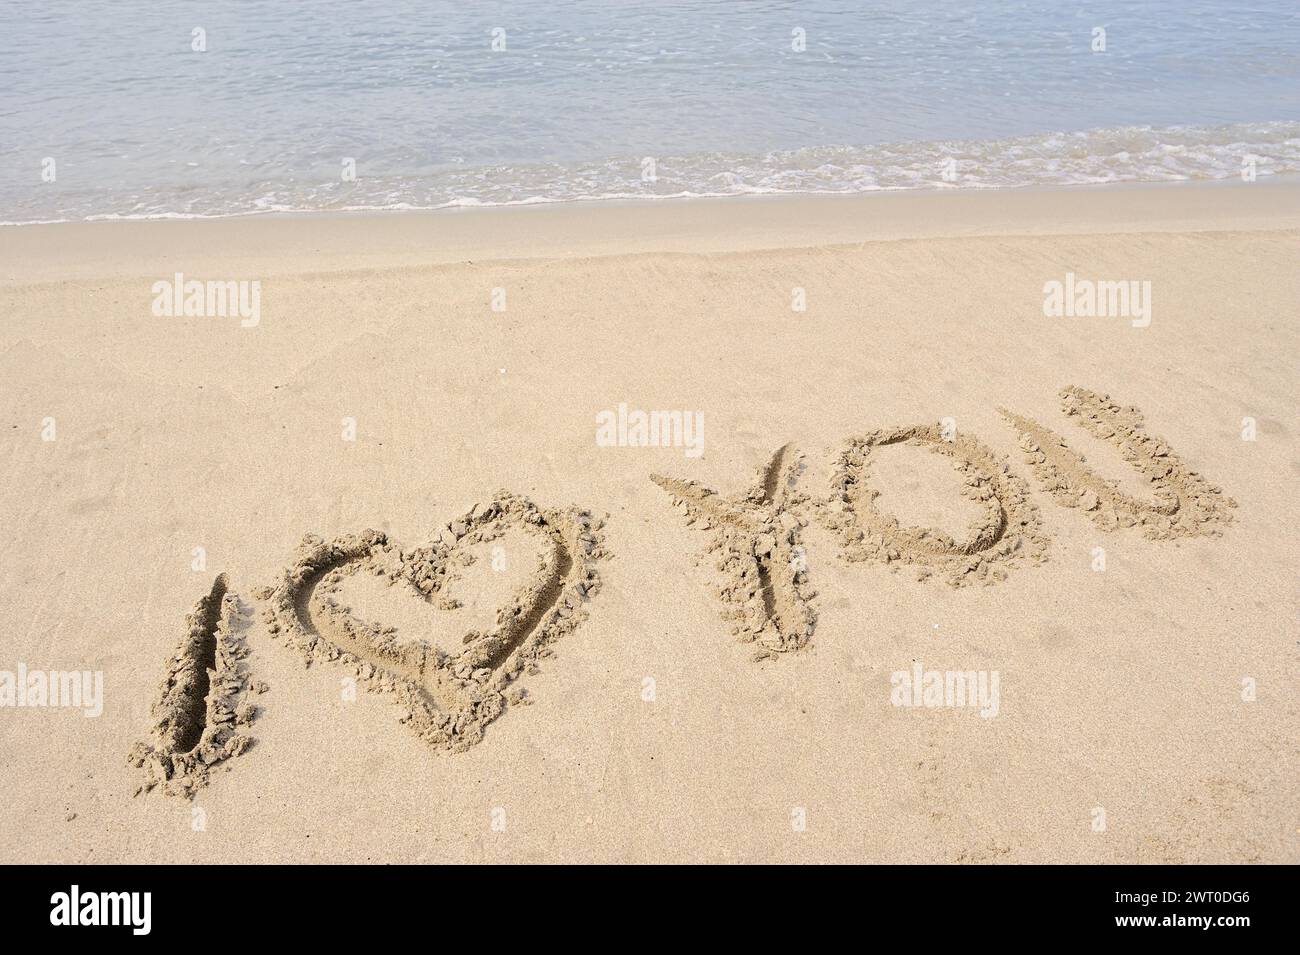 Je t'aime écrit dans le sable, la plage, la Camargue, la Provence, le Sud de la France Banque D'Images